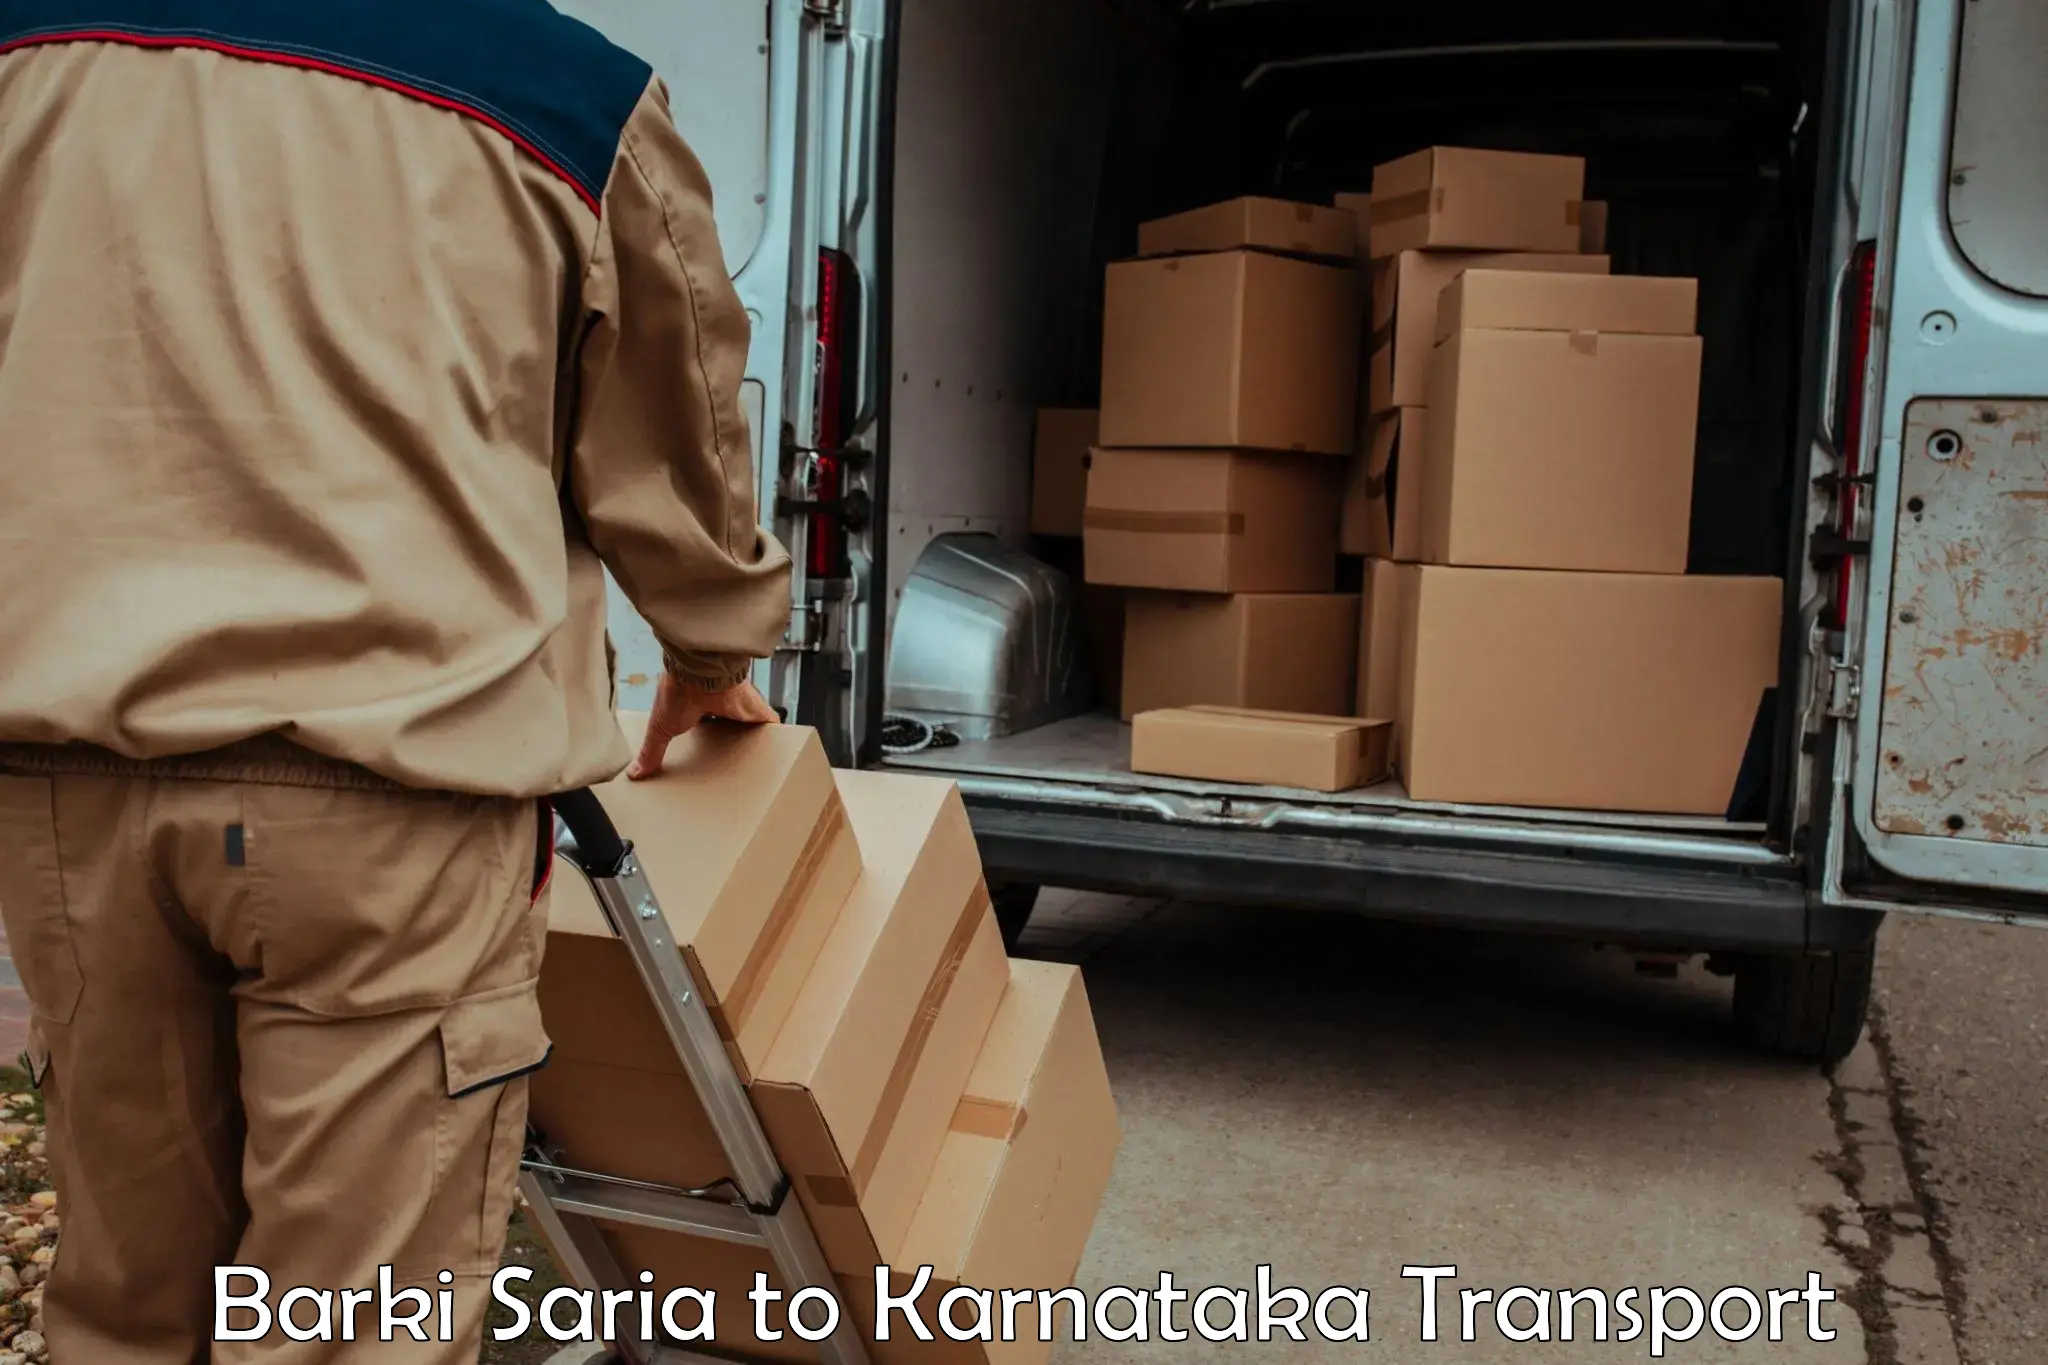 Daily transport service Barki Saria to Kerur